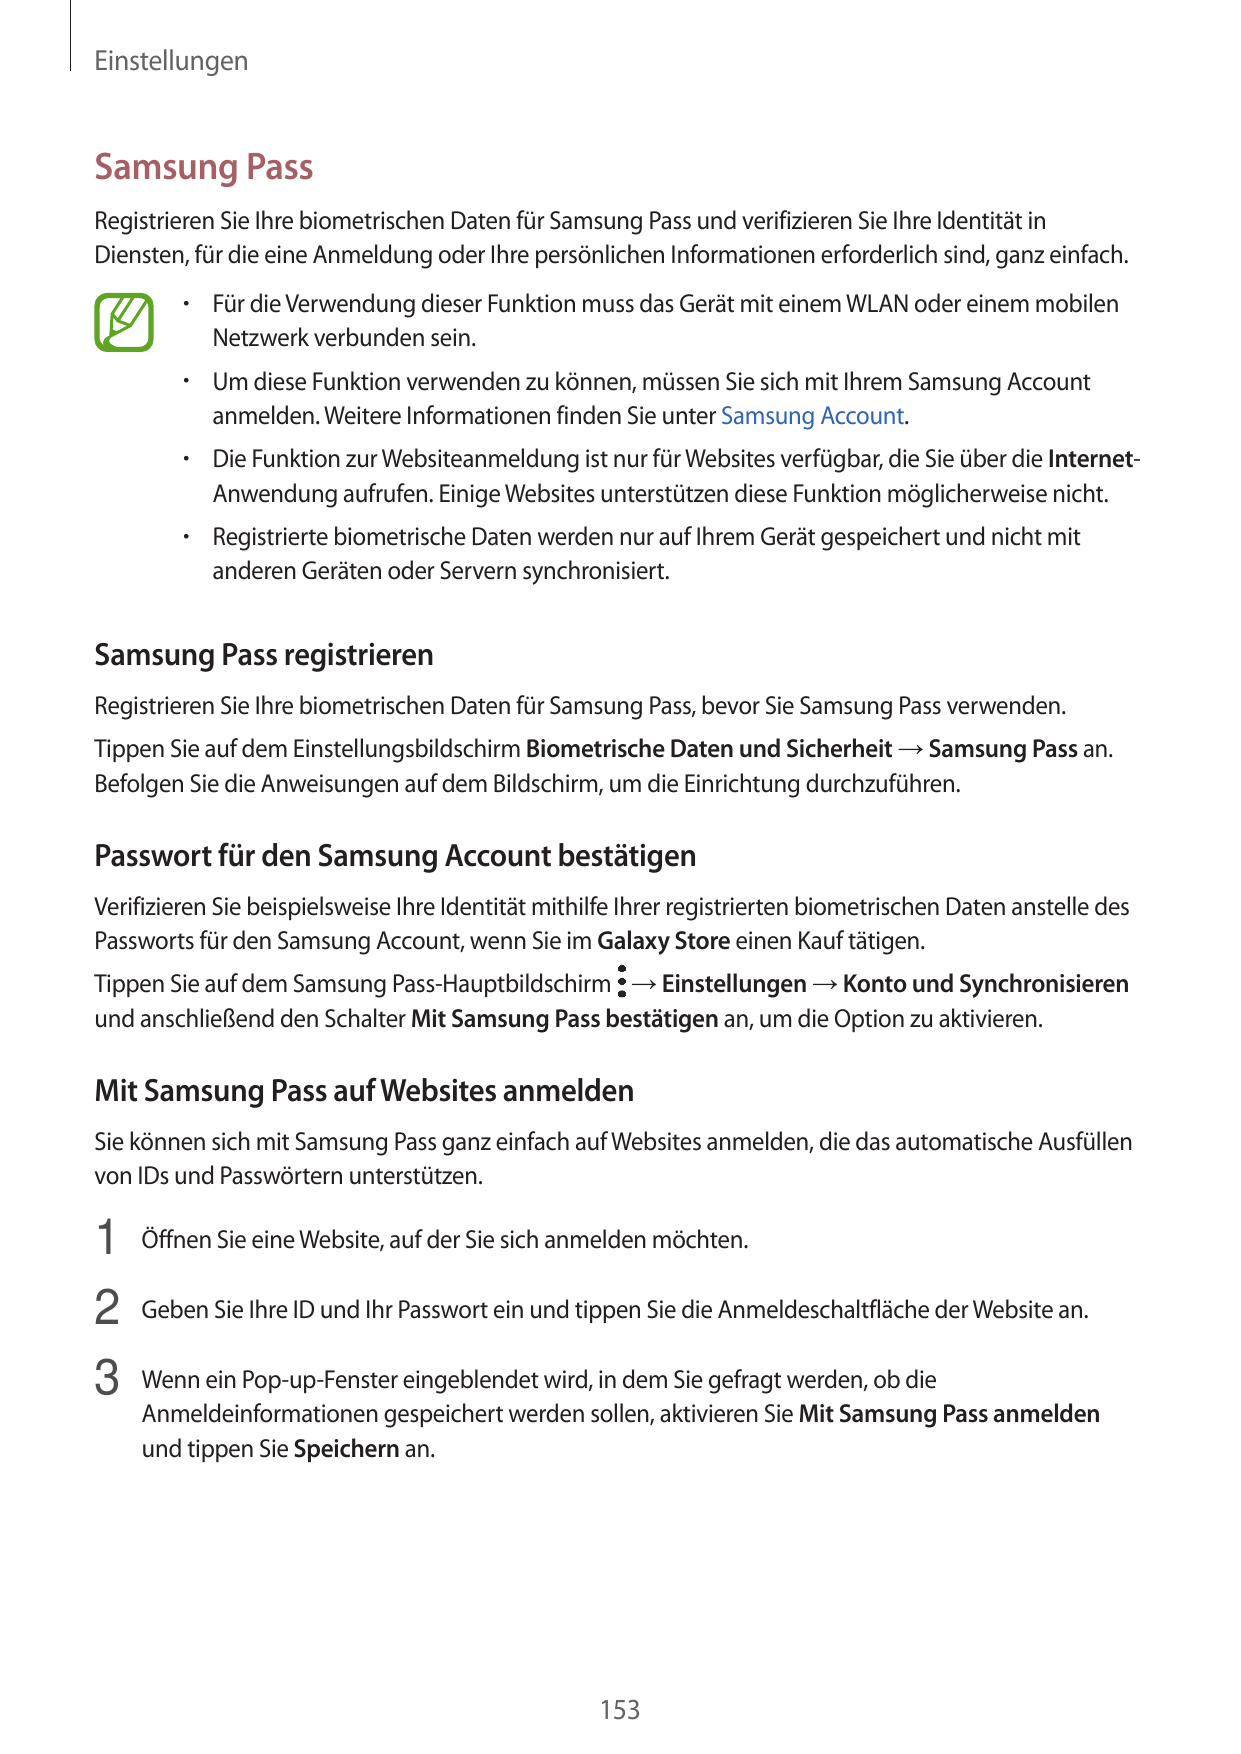 EinstellungenSamsung PassRegistrieren Sie Ihre biometrischen Daten für Samsung Pass und verifizieren Sie Ihre Identität inDienst